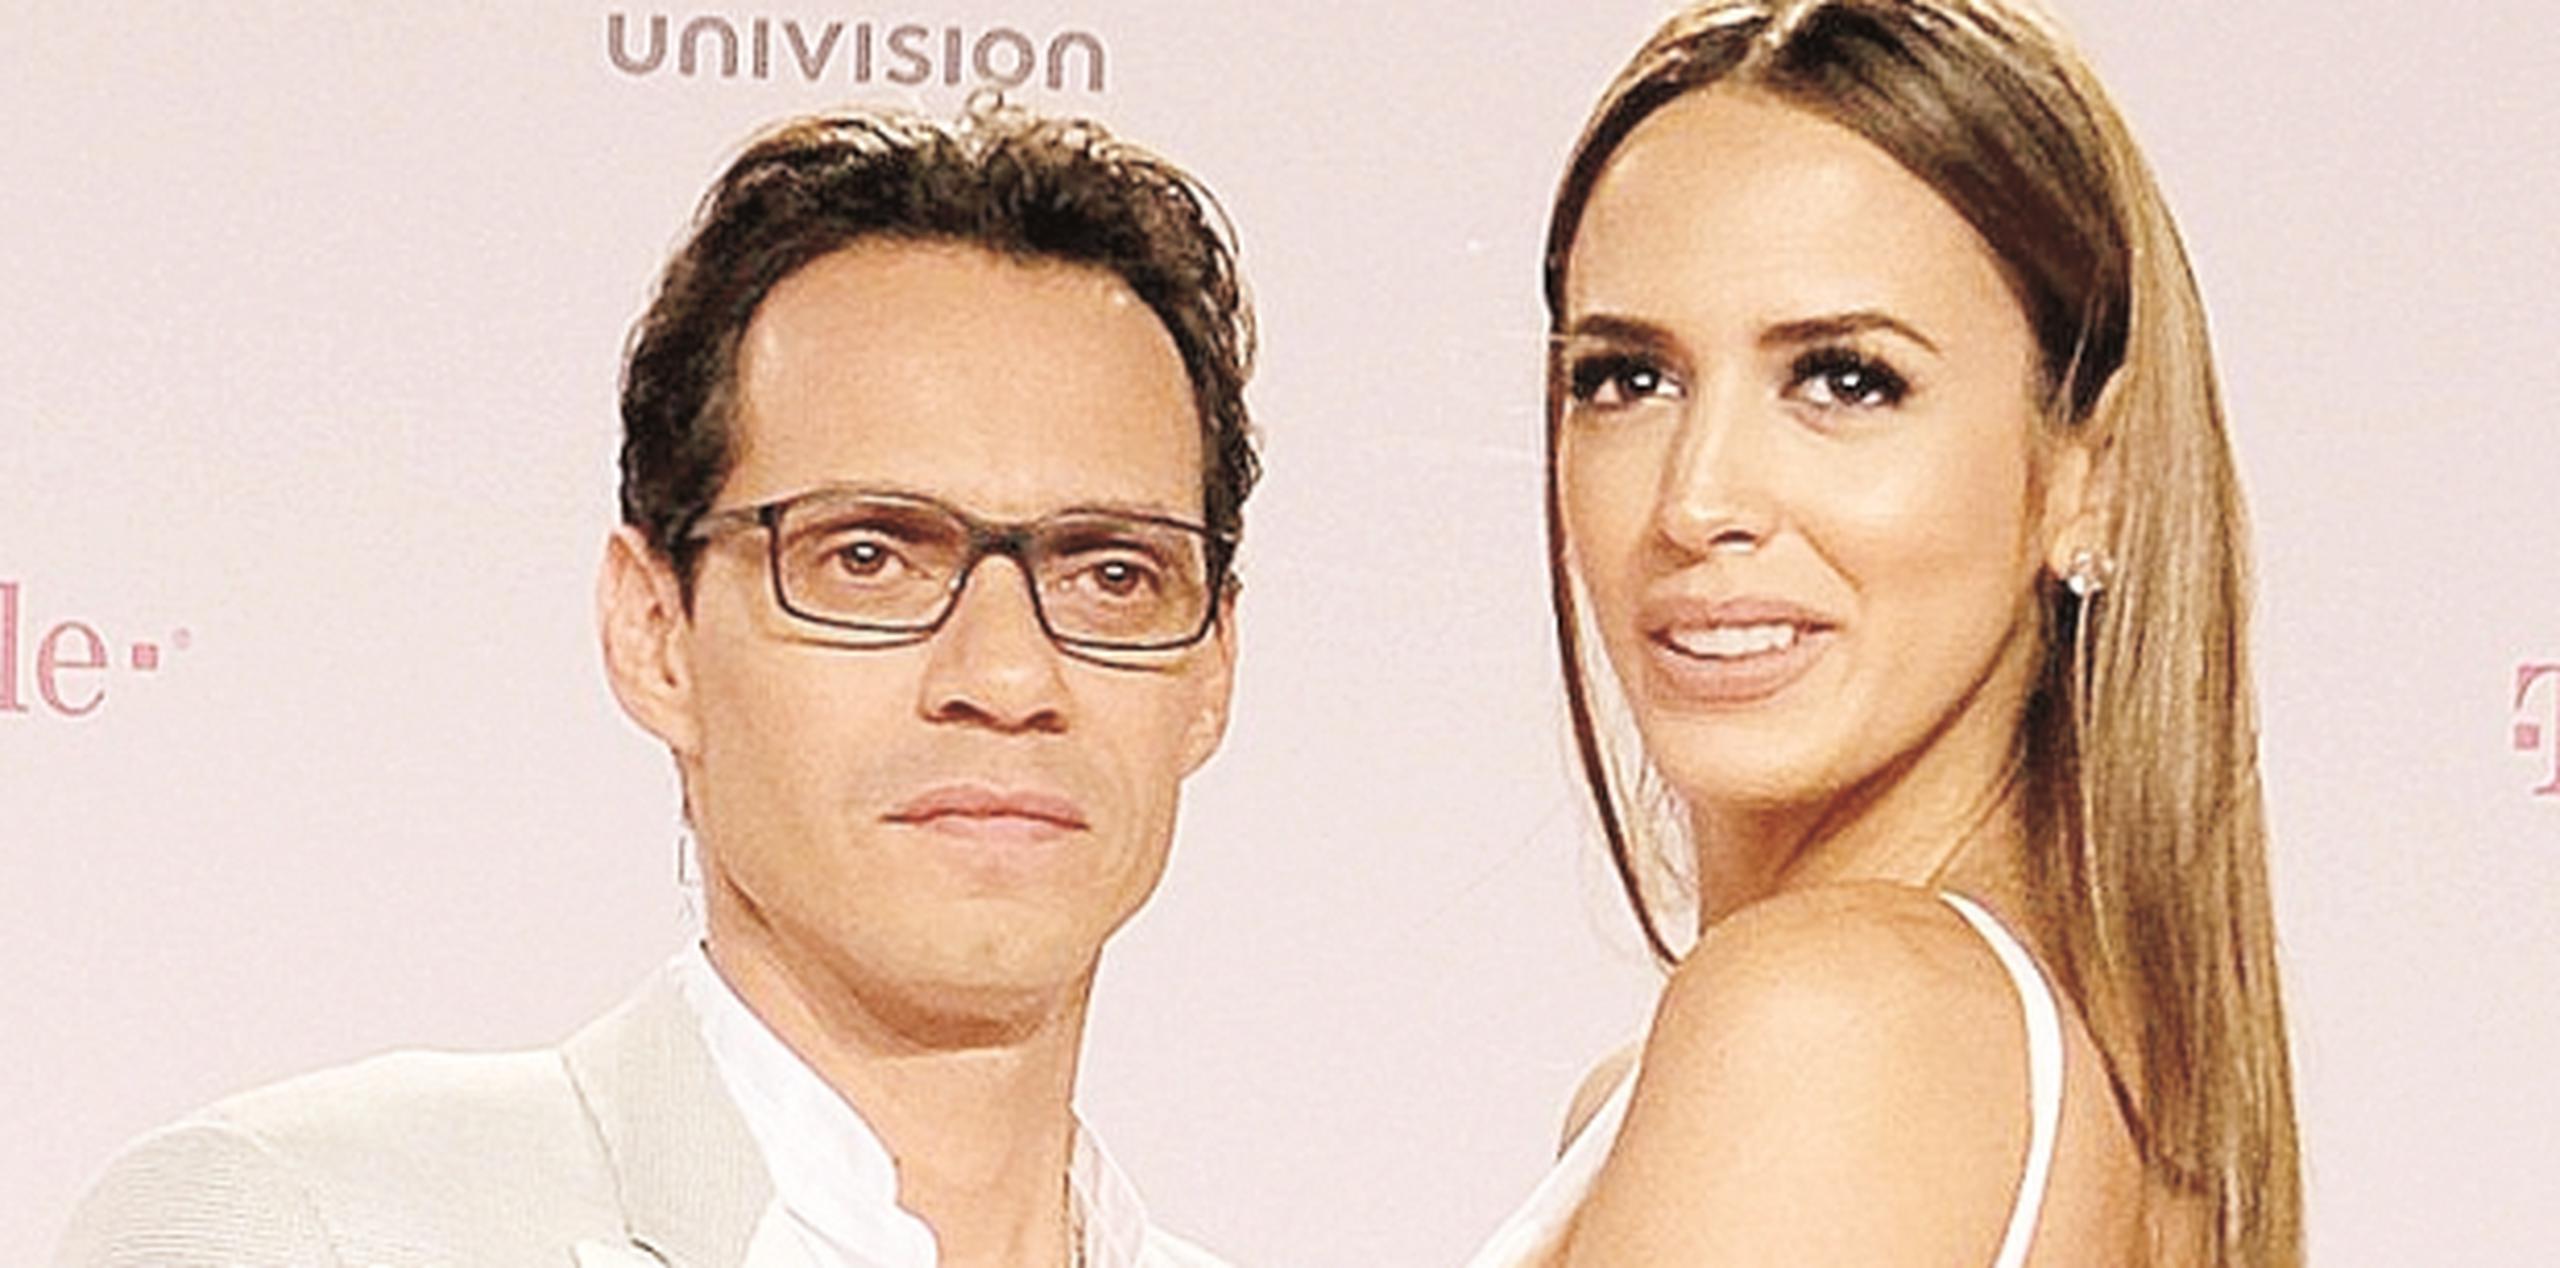 Univision.com expuso que la fecha de la próxima vista de divorcio no ha sido anunciada, pero, se espera que sea la próxima semana.  (Archivo)